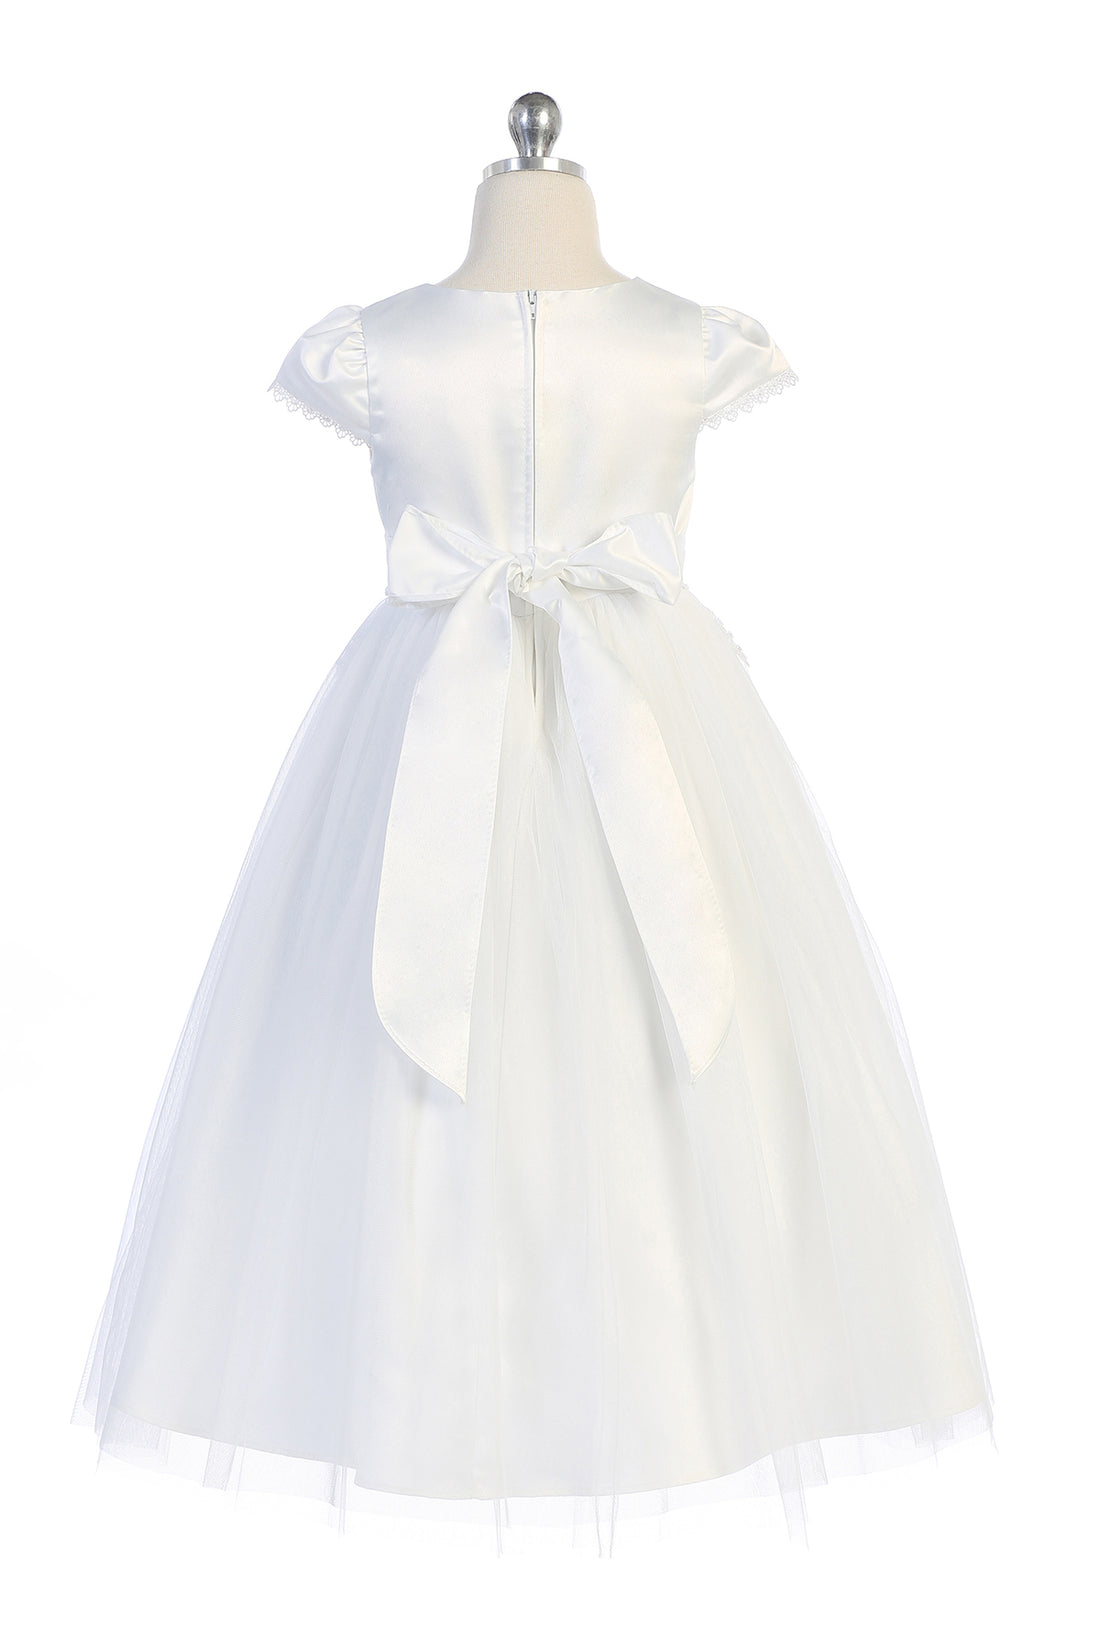 Chandelier Trim Communion Flower Girl Dress by AS460 Kids Dream - Girl Formal Dresses